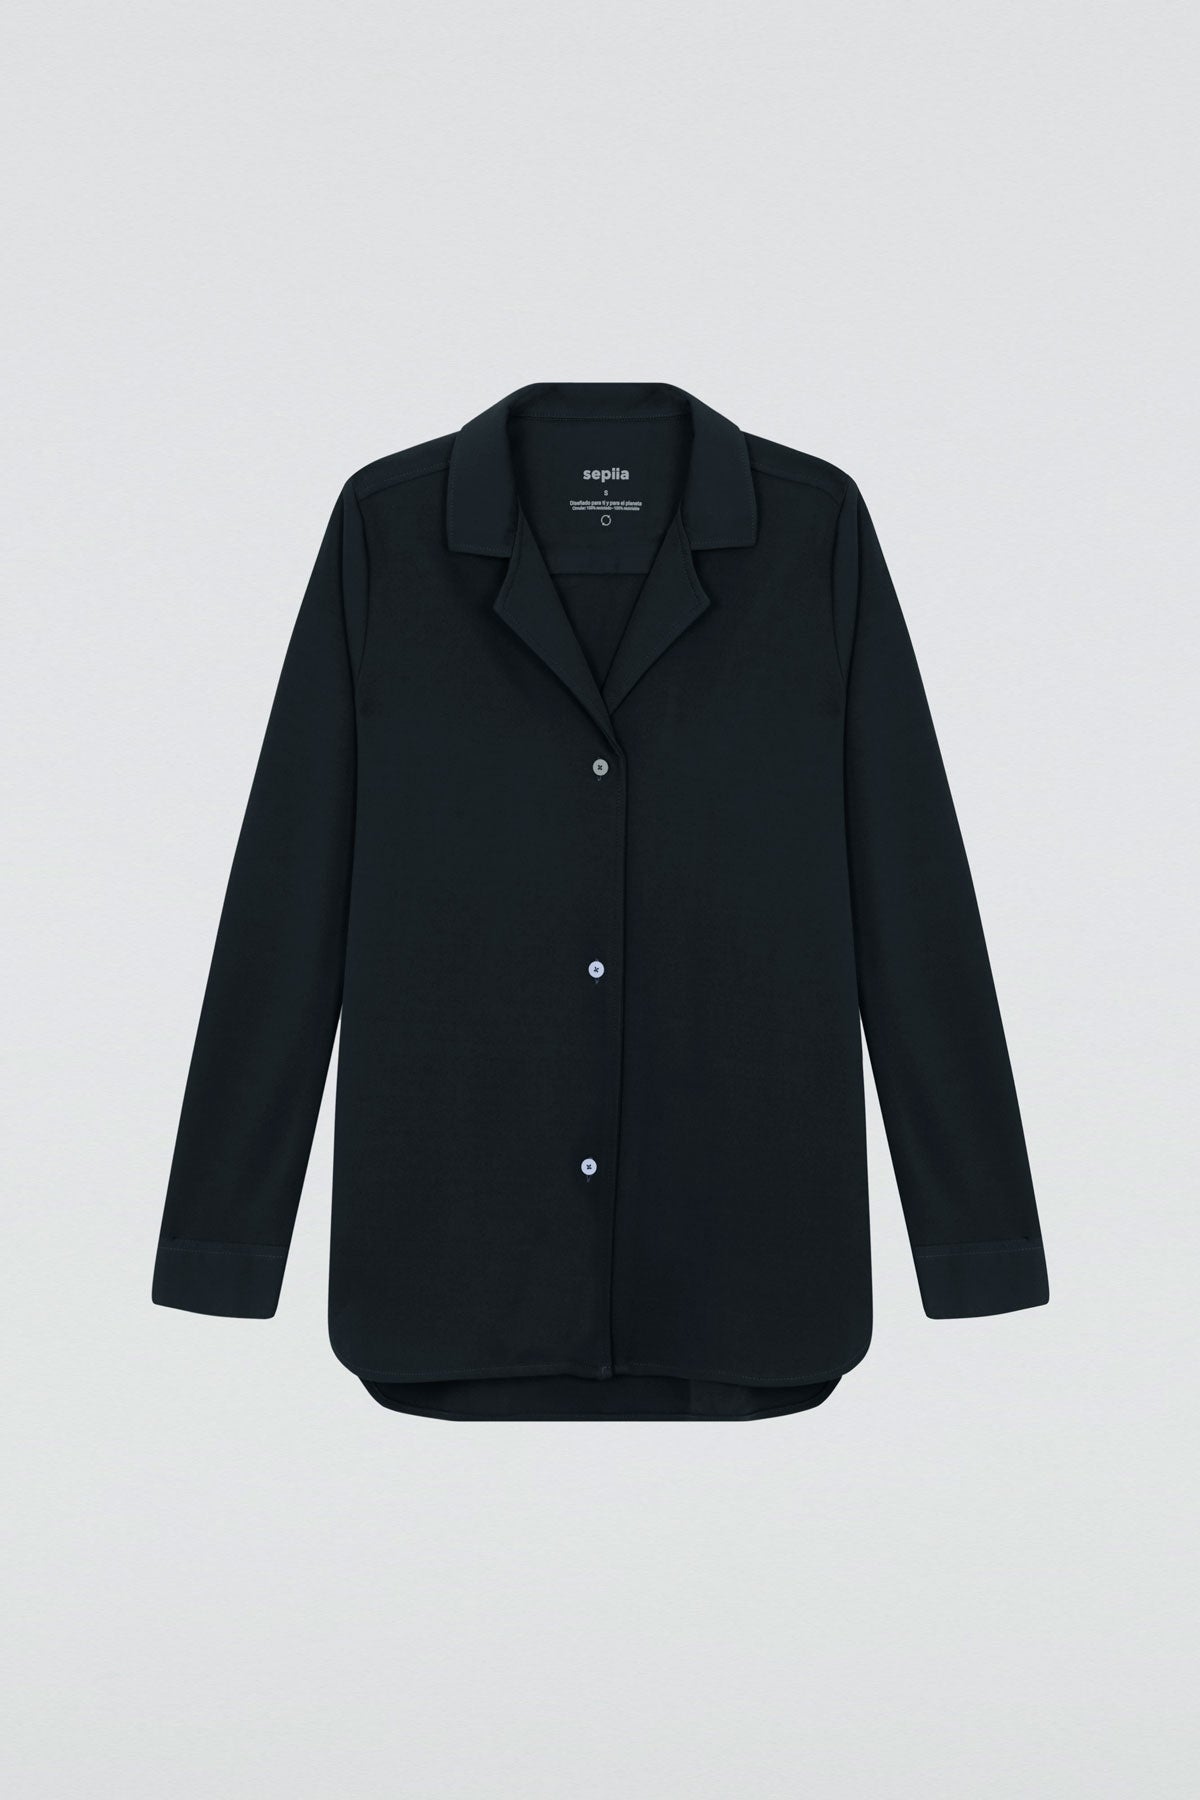 Camisa bowling de mujer negra de Sepiia, estilo y versatilidad en una prenda cómoda y resistente.  Foto prenda en plano